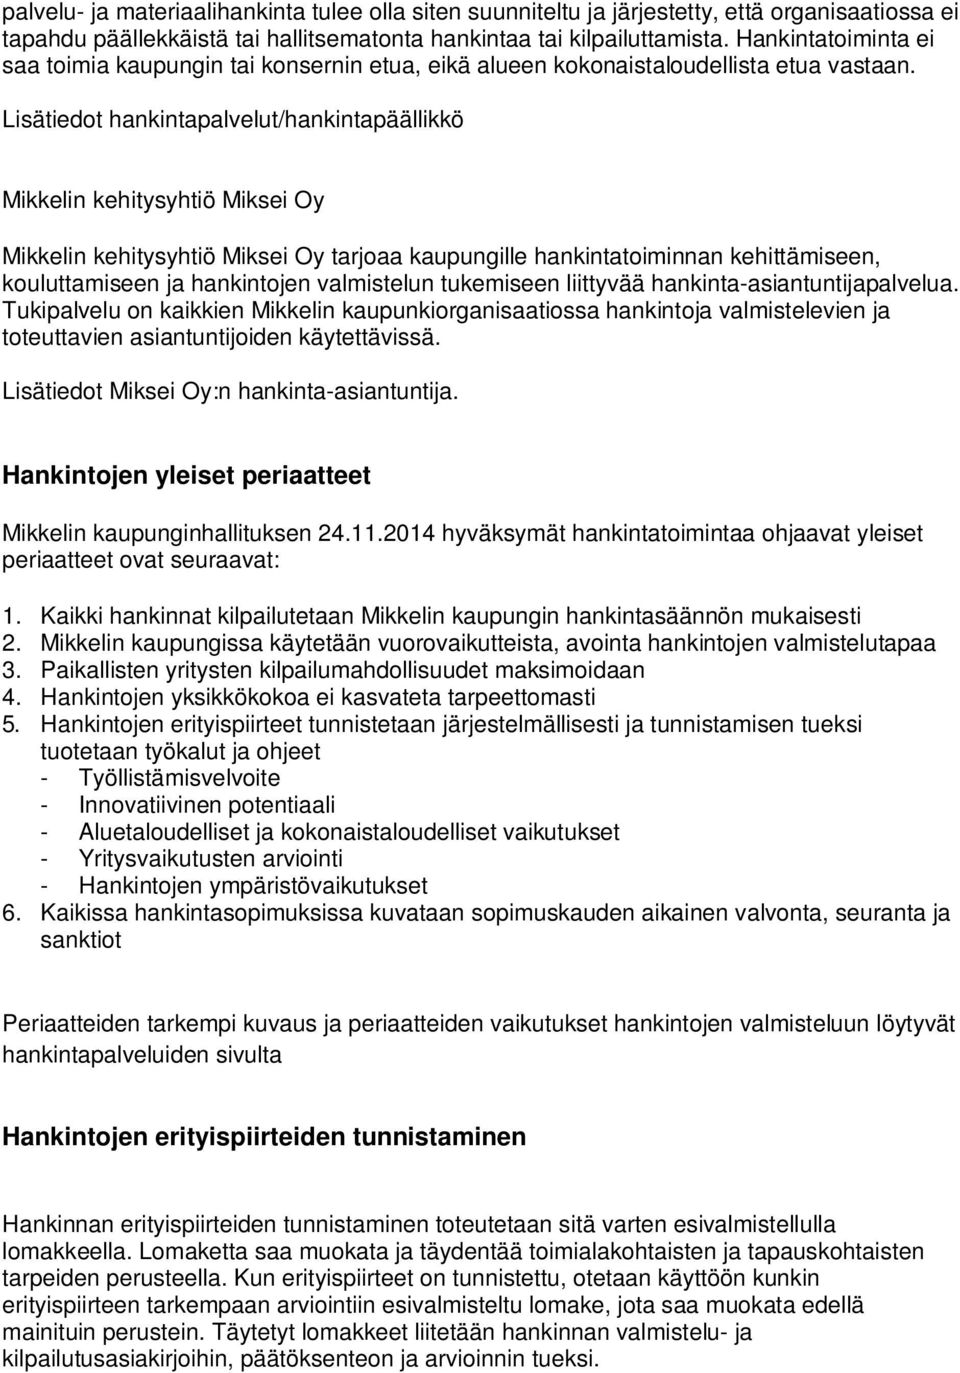 Lisätiedot hankintapalvelut/hankintapäällikkö Mikkelin kehitysyhtiö Miksei Oy Mikkelin kehitysyhtiö Miksei Oy tarjoaa kaupungille hankintatoiminnan kehittämiseen, kouluttamiseen ja hankintojen